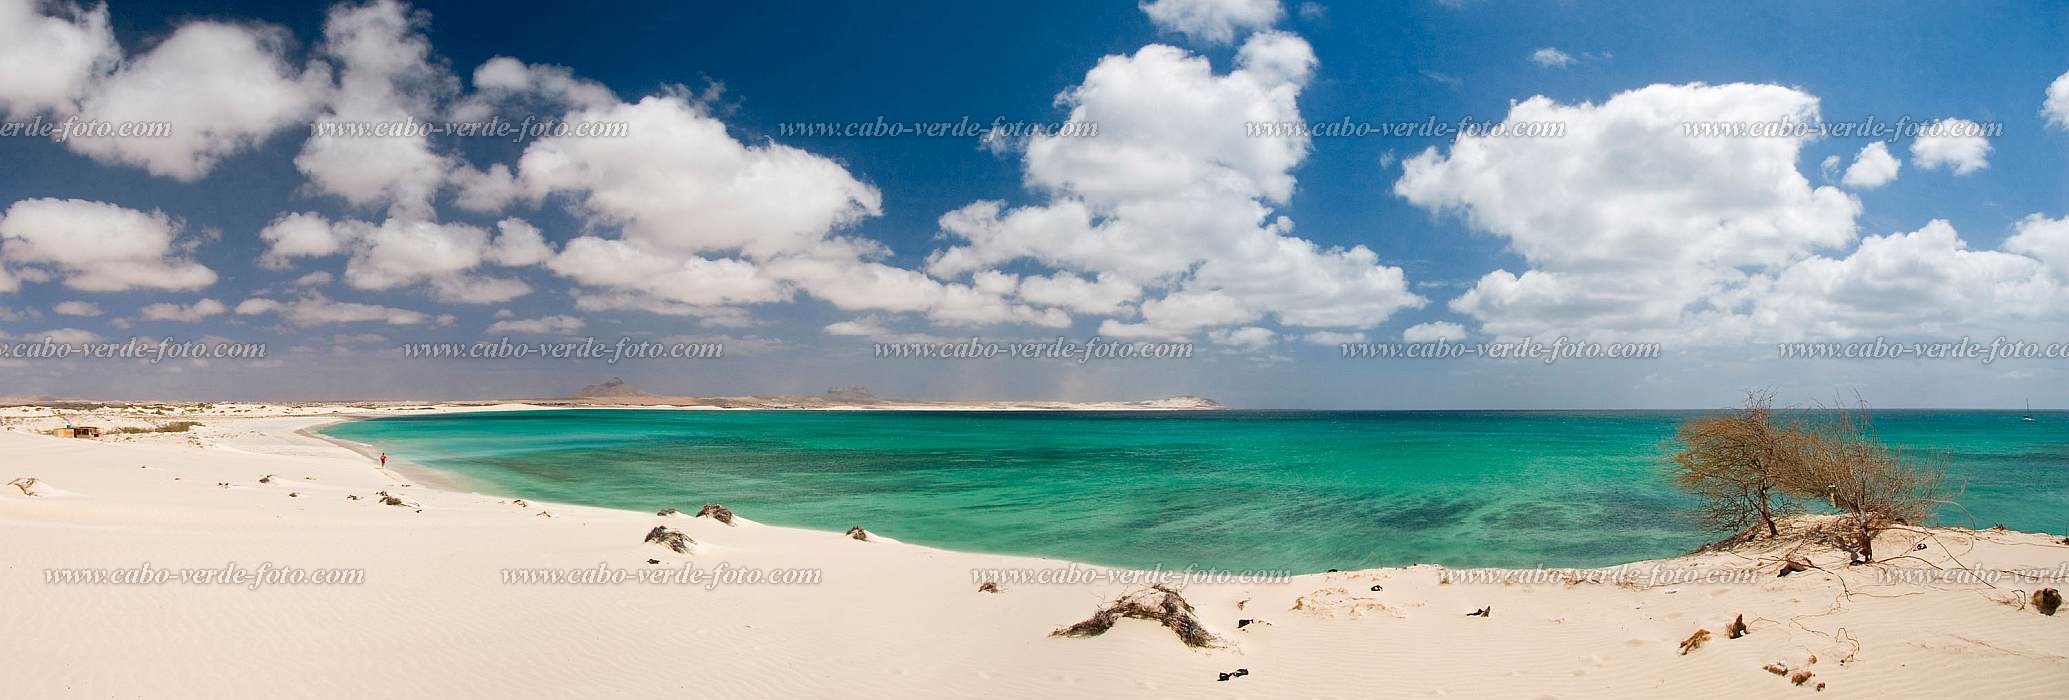 Boa Vista : Praia de Charlota : pria : Landscape SeaCabo Verde Foto Gallery